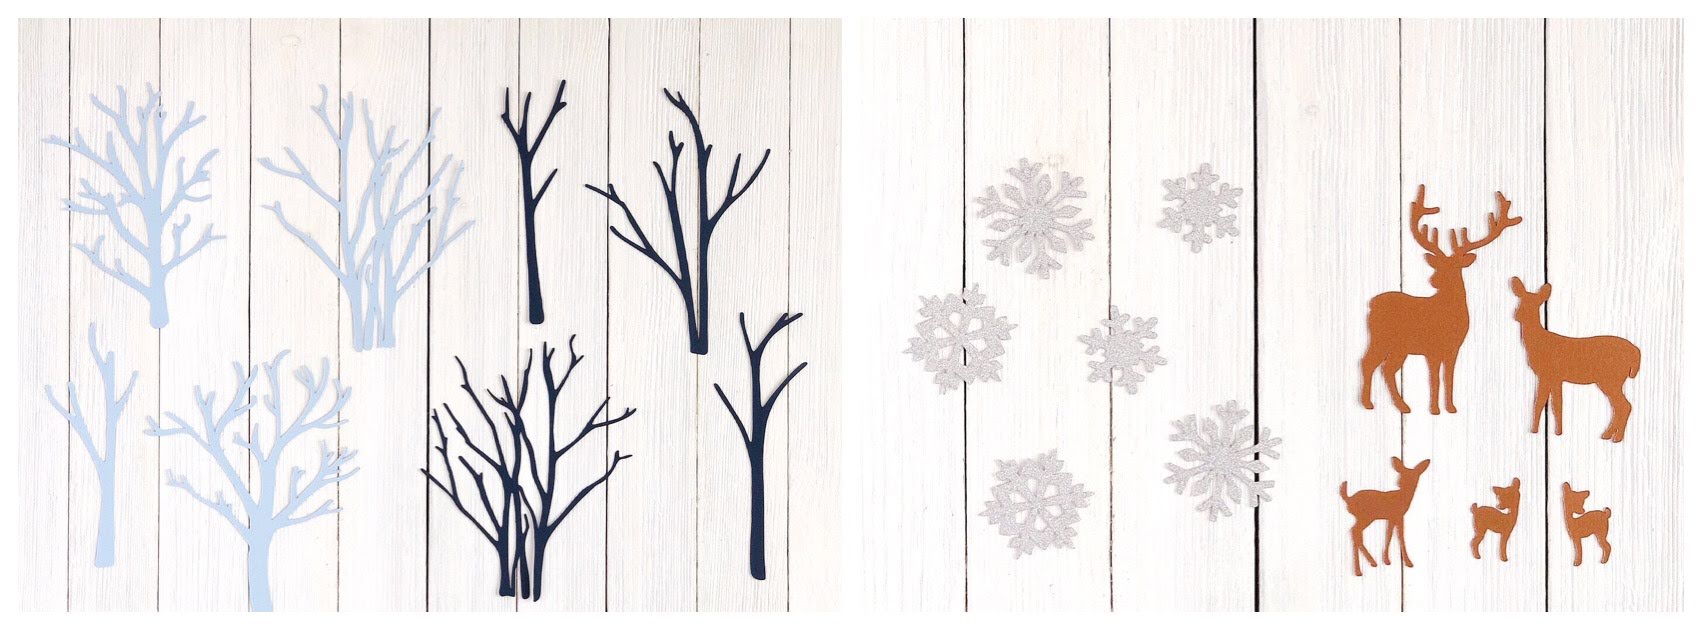 DIY Cardstock Paper Winter Scene 